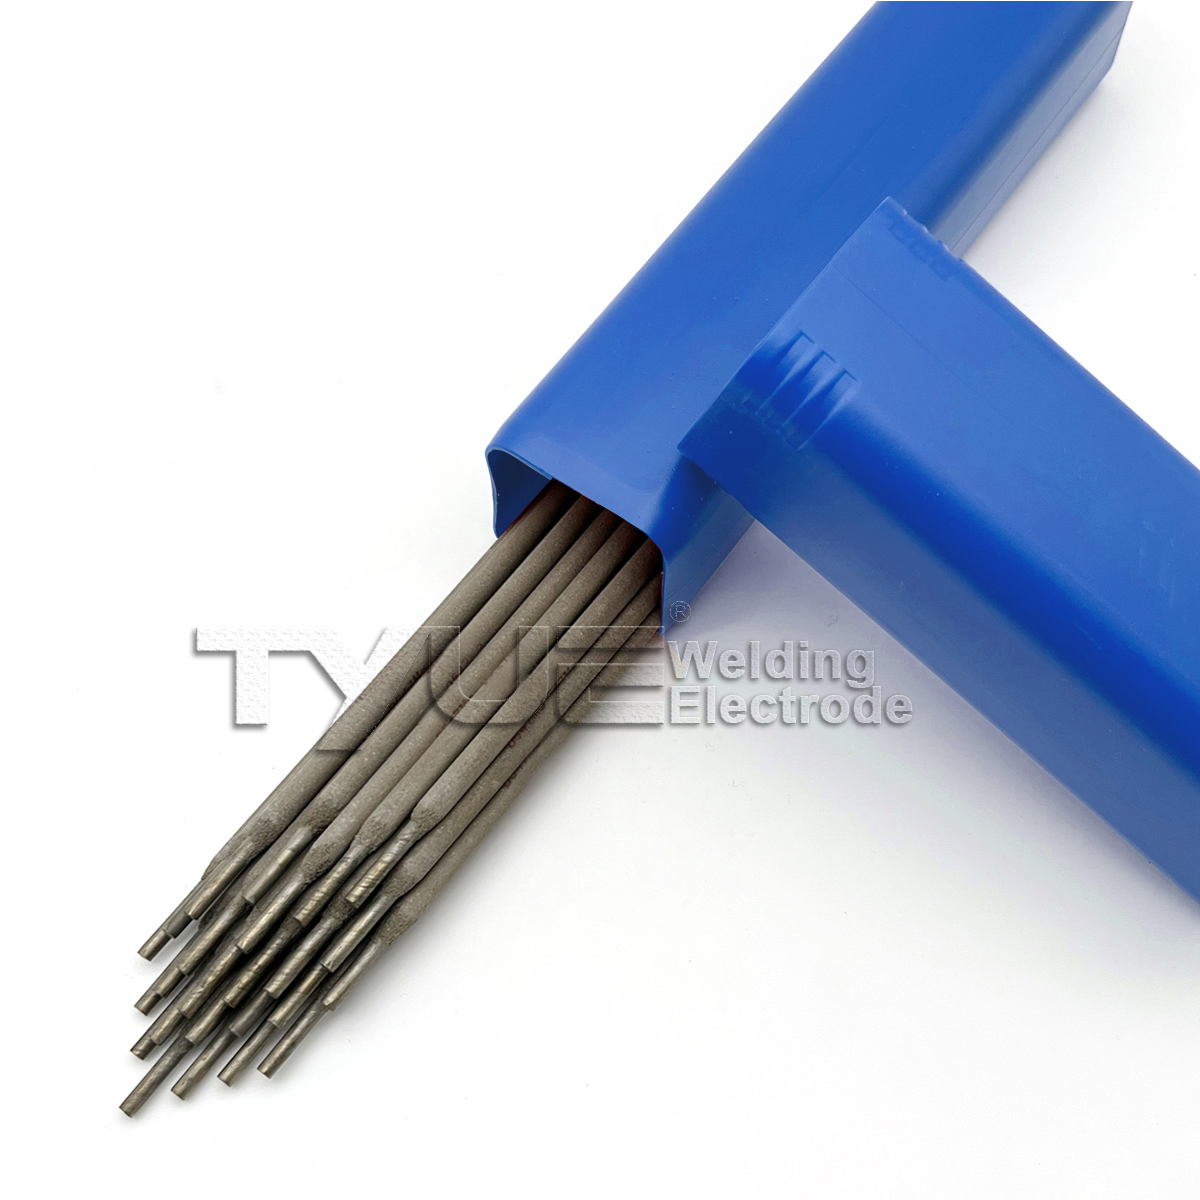 Elettrodi per saldatura per riporti duri DIN 8555 (E1-UM-350) Bacchette per saldatura per riporti, elettrodo a bastoncino resistente all'usura